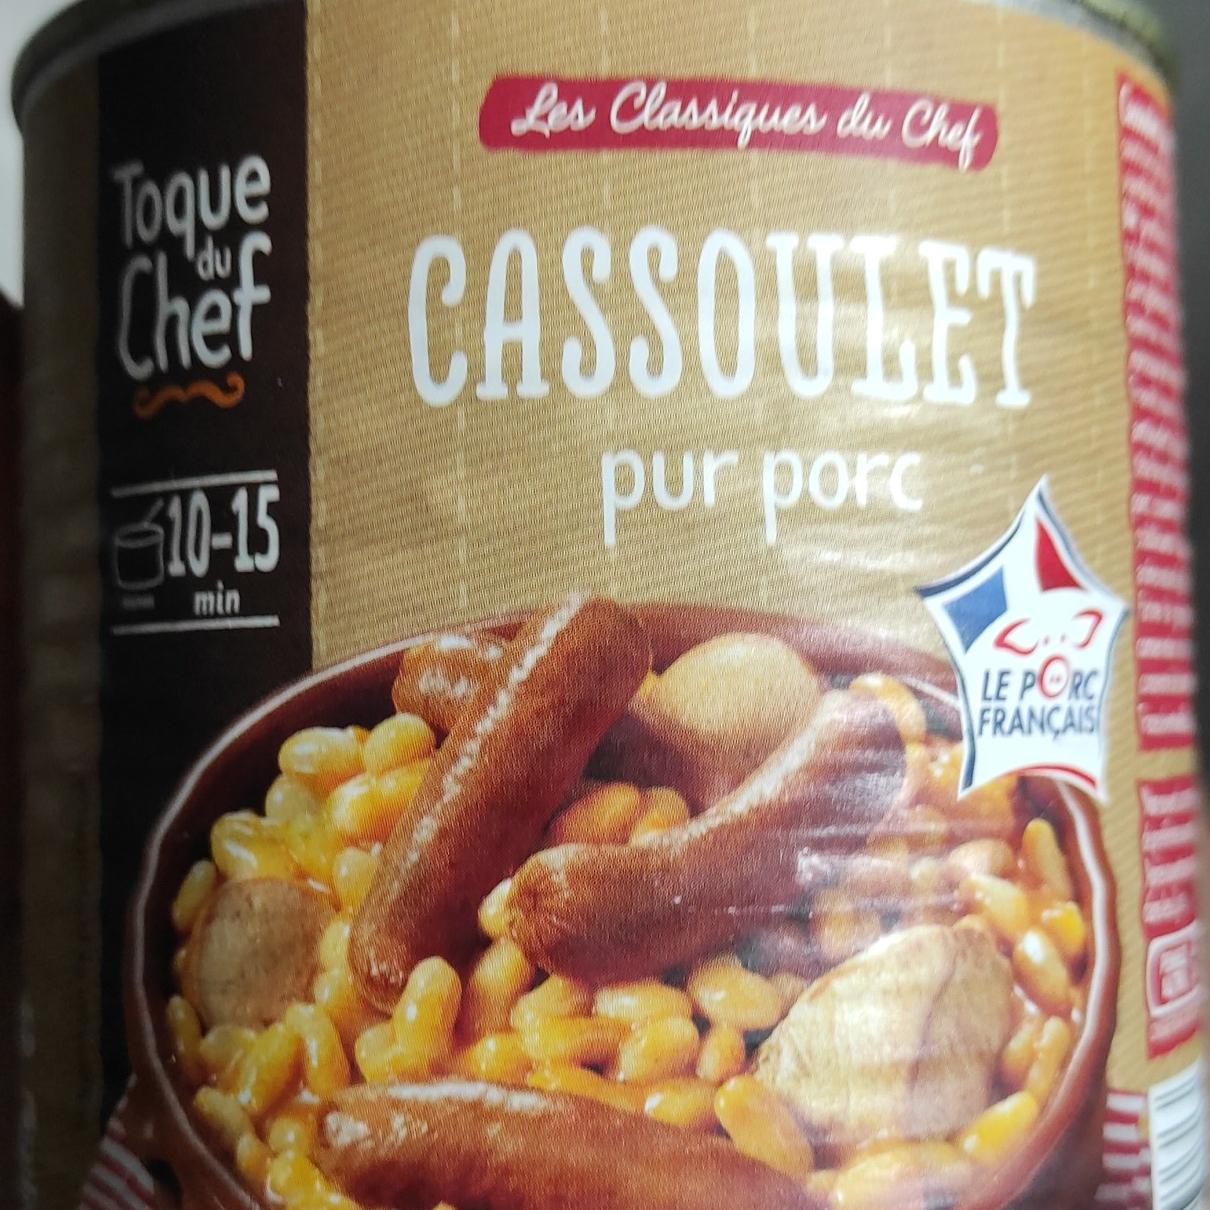 Фото - консервированная фасоль с сосисками Cassoulet pur porc Toque du chef